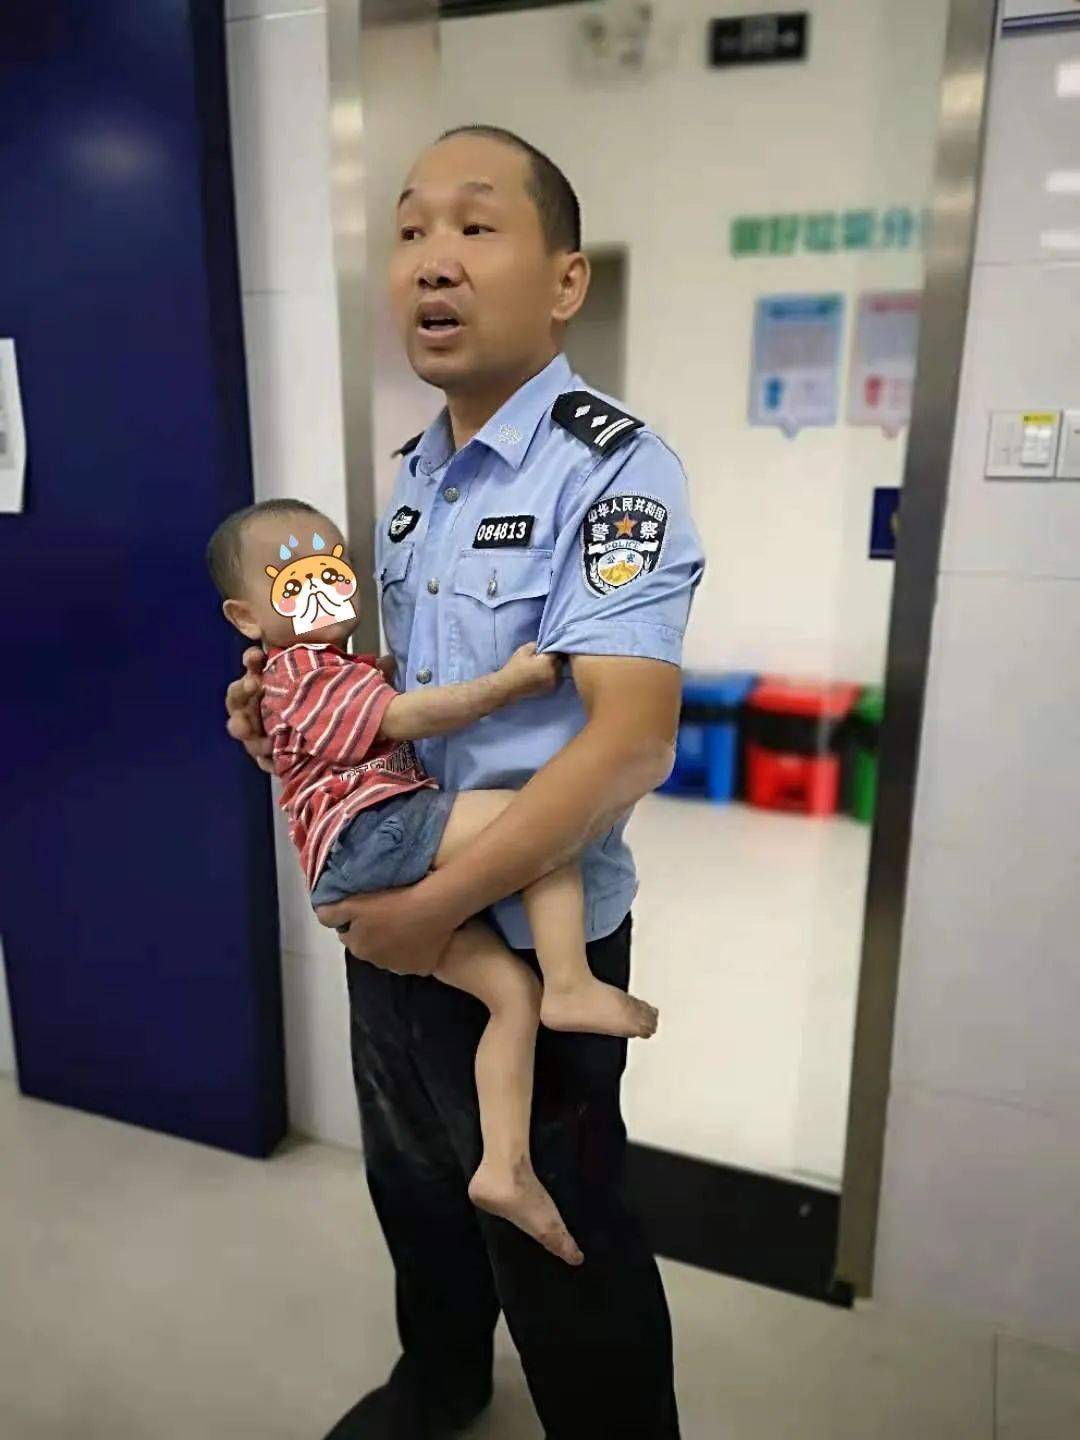 警察叔叔抓小孩的图片图片